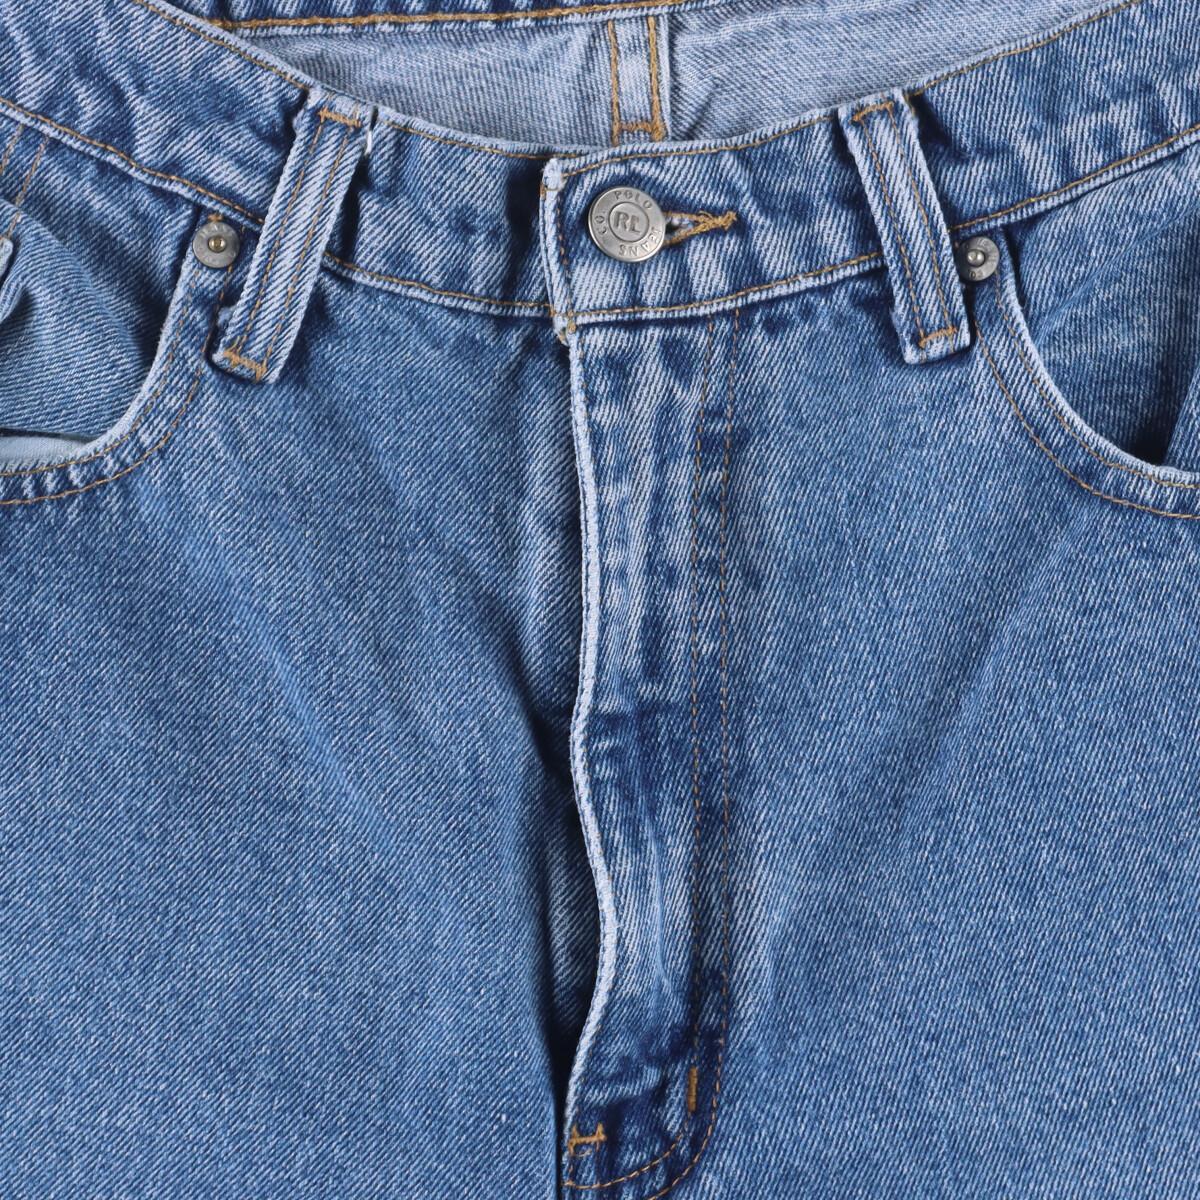  old clothes Ralph Lauren Ralph Lauren POLO JEANS COMPANY jeans Denim pants men's w32 /eaa322046